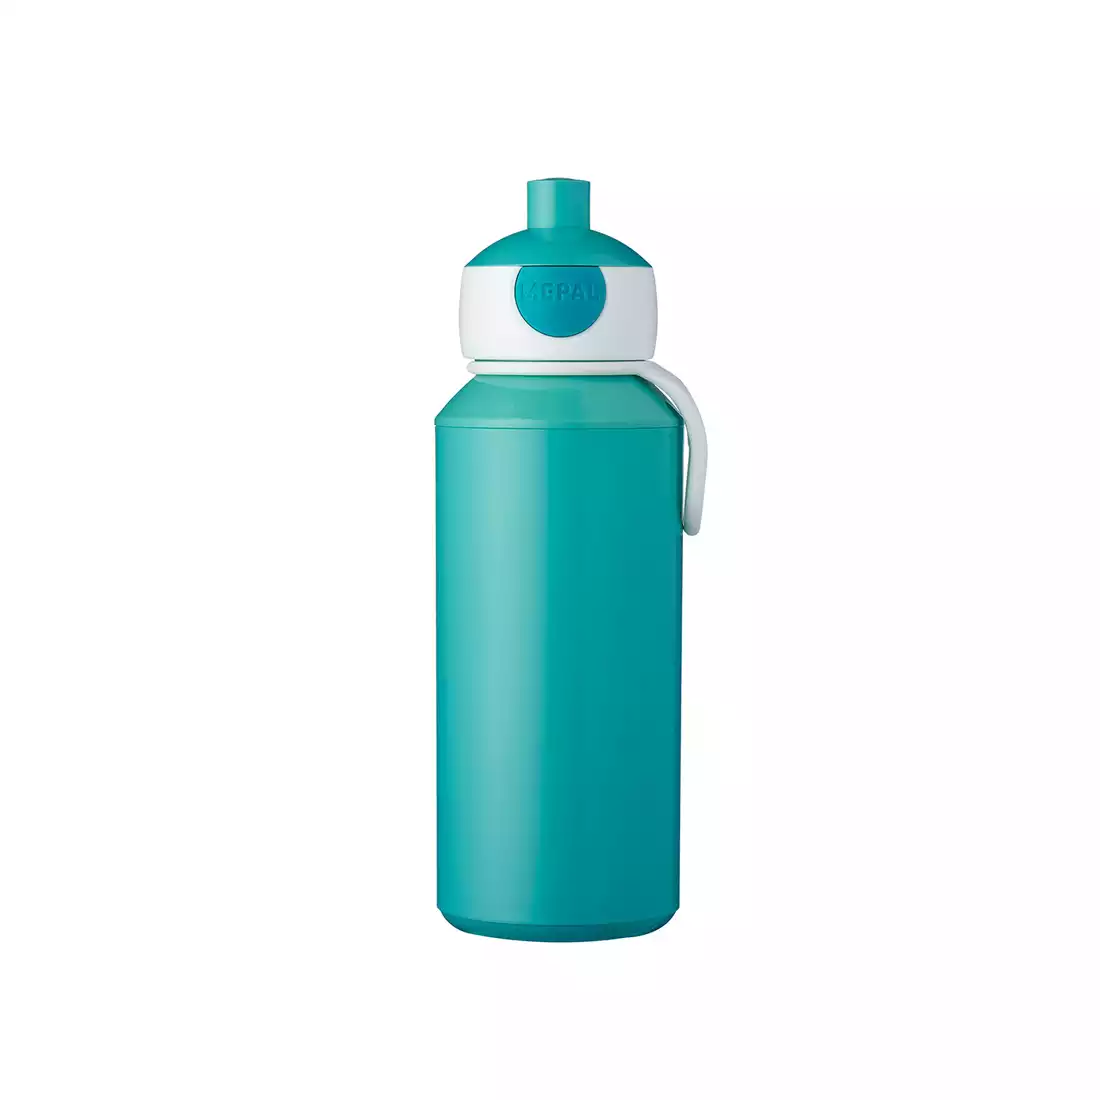 MEPAL POP-UP CAMPUS sticla de apa pentru copii 400 ml turcoaz